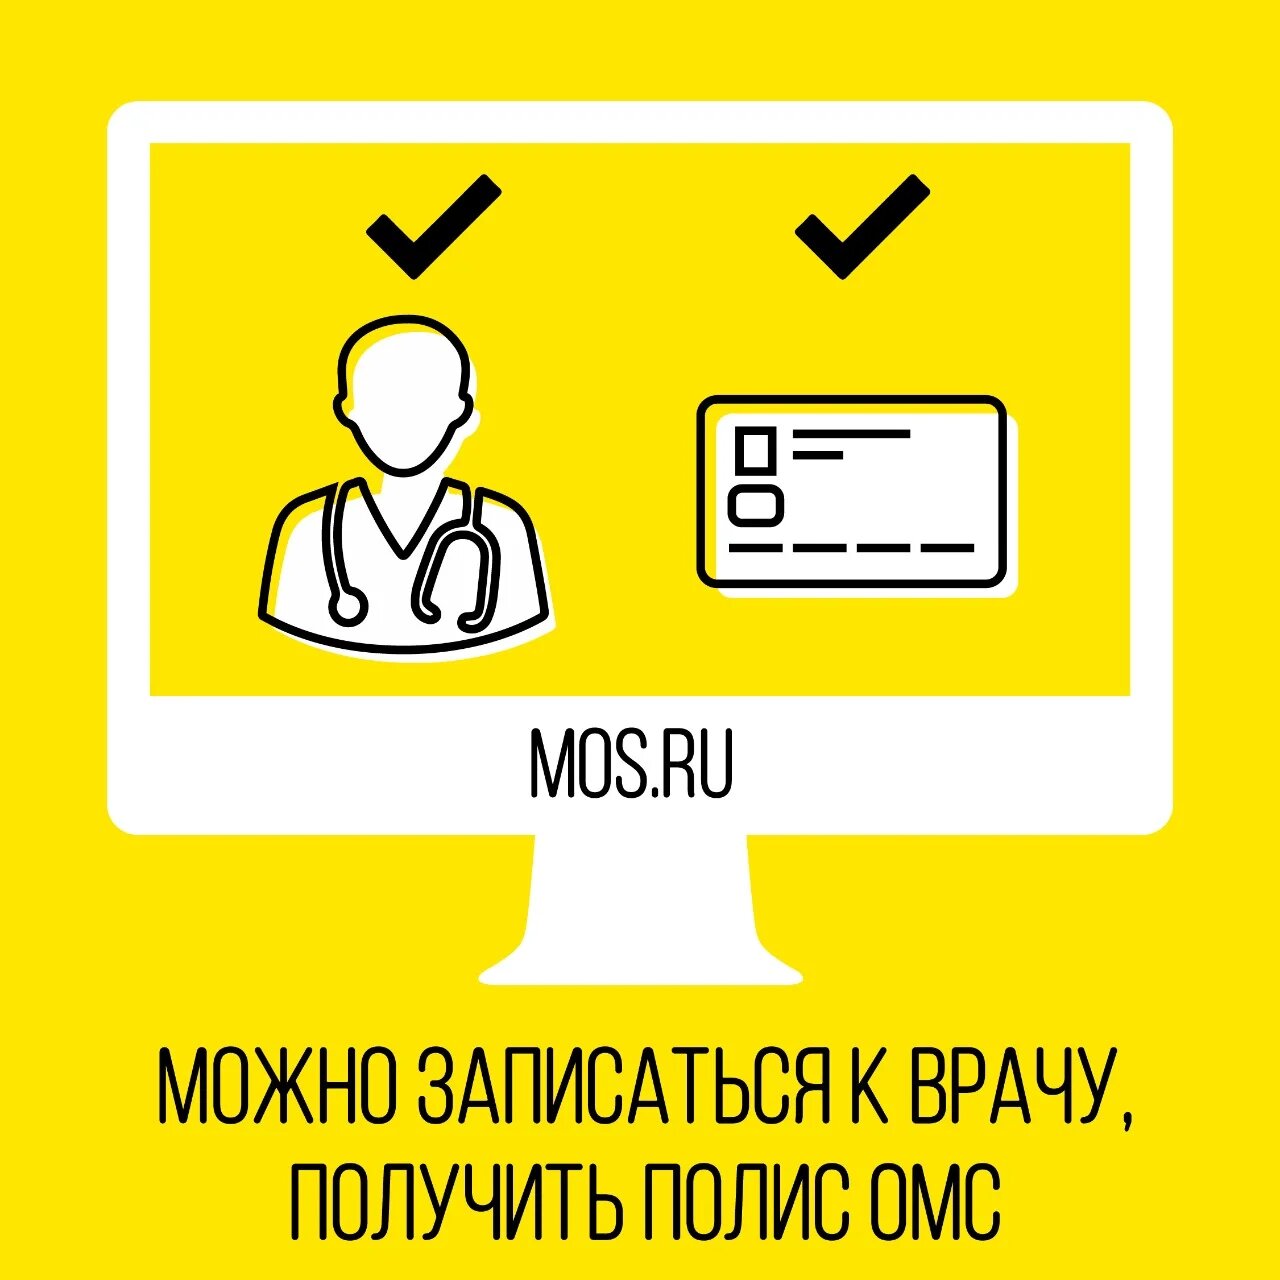 Более 360 услуг стали доступны москвичам на портале mos.ru